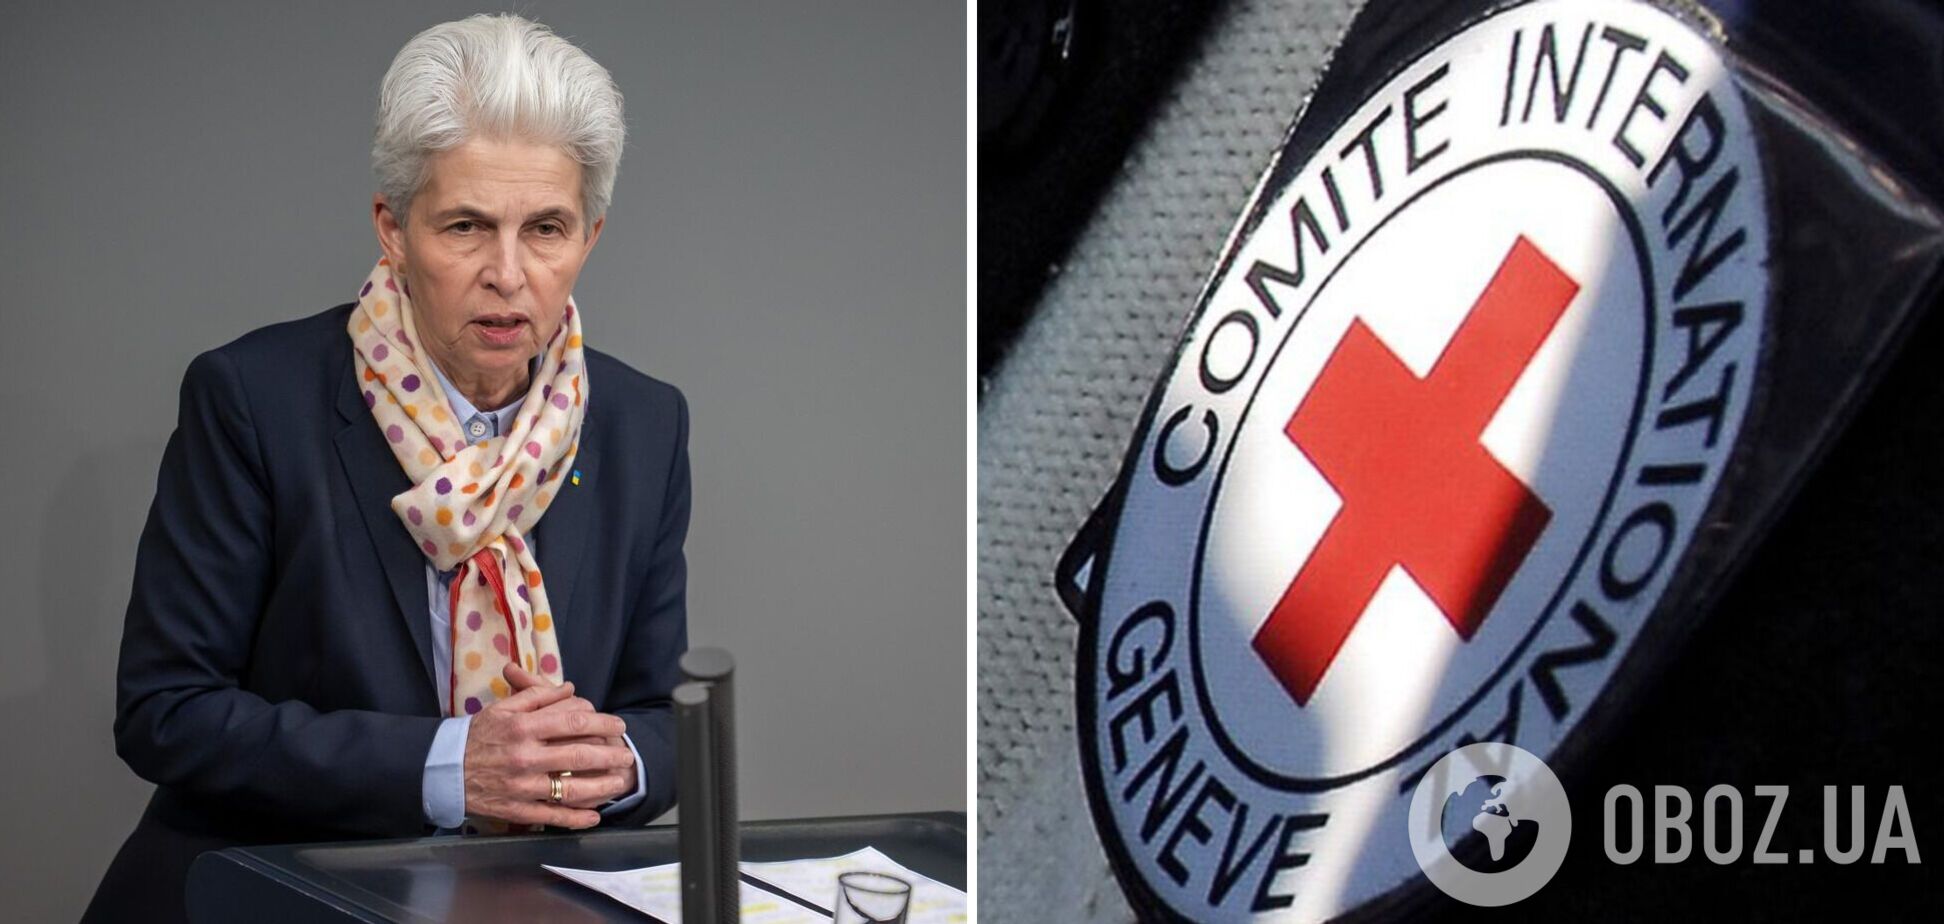 Глава оборонного комитета Бундестага призвала Красный Крест предоставить отчет о работе за 17 месяцев войны в Украине: есть сомнения относительно независимости